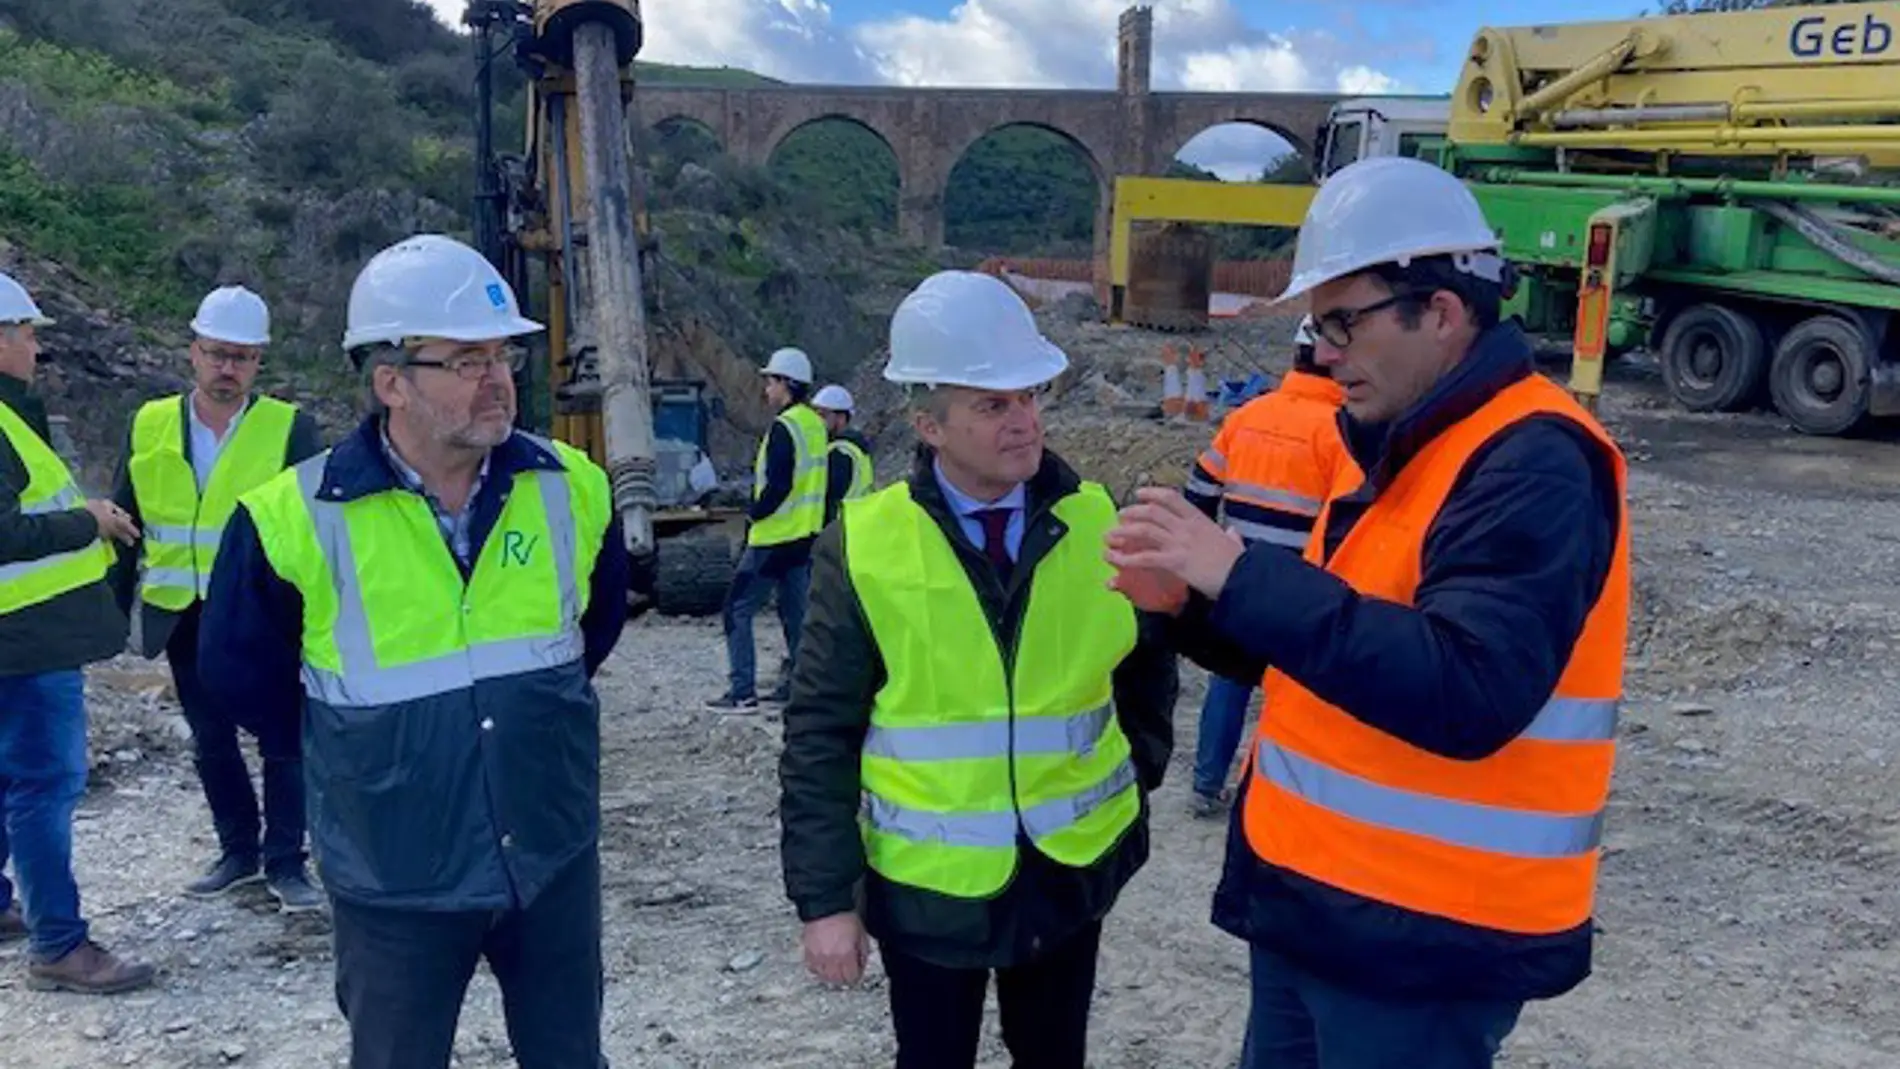 El nuevo puente de Alcántara estará acabado en verano de 2025 tras inyectar 6 millones de euros adicionales al proyecto